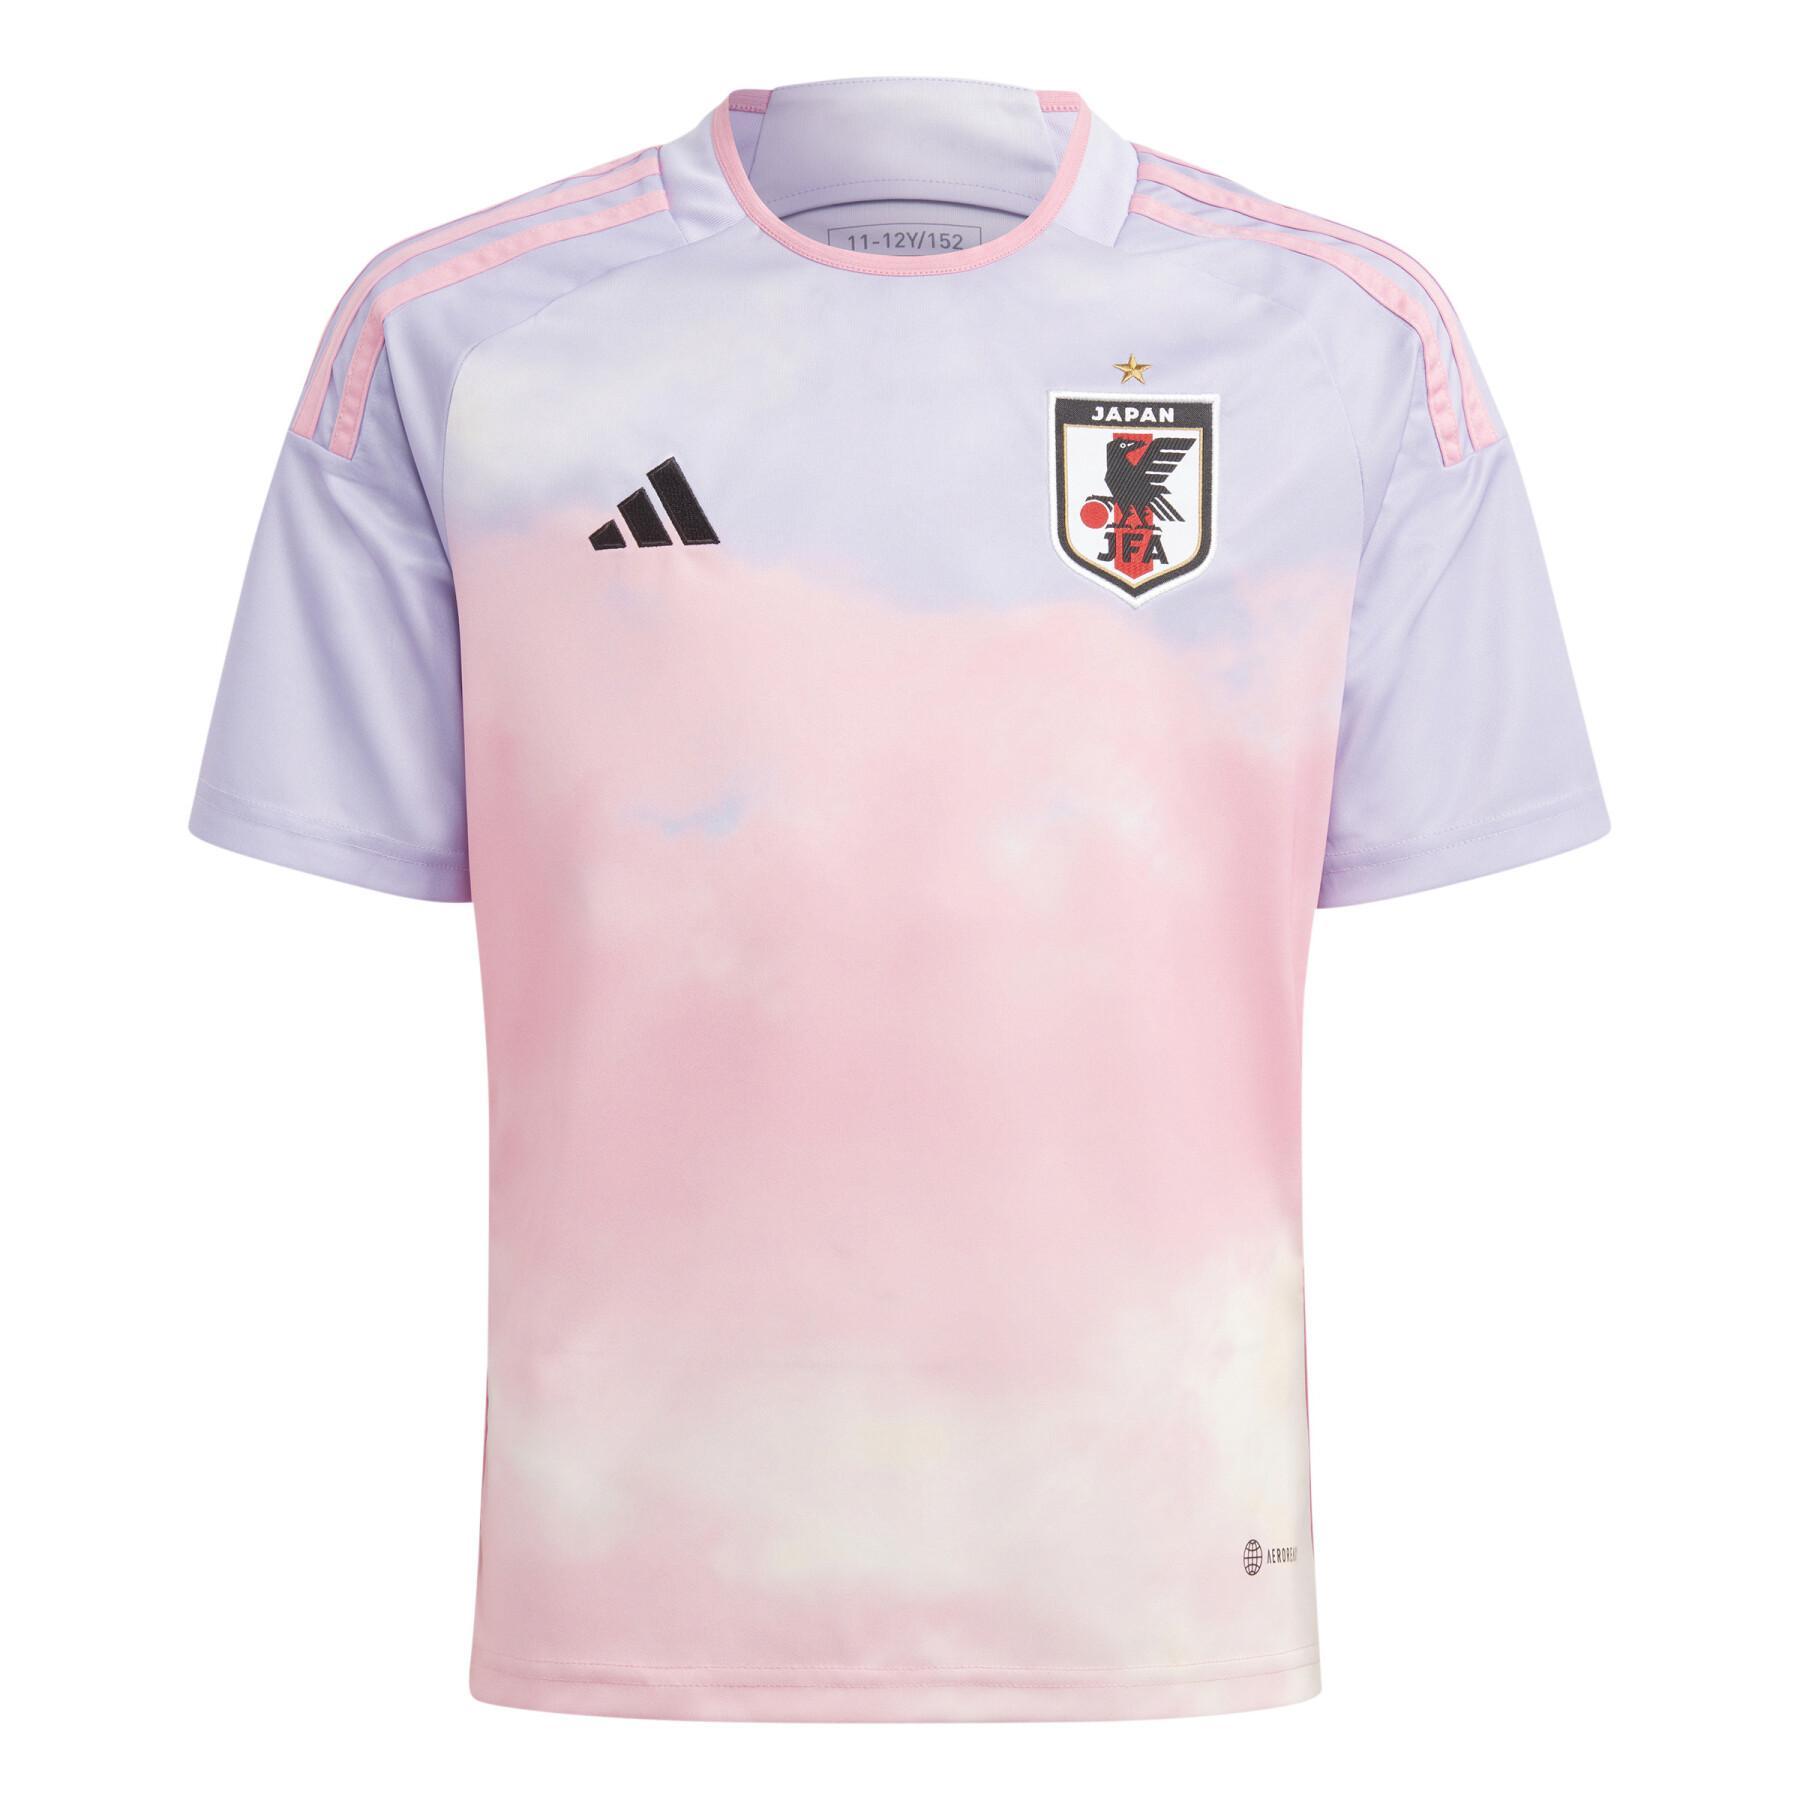 Dziecięca koszulka zewnętrzna Japon Coupe du monde féminine 2022/23